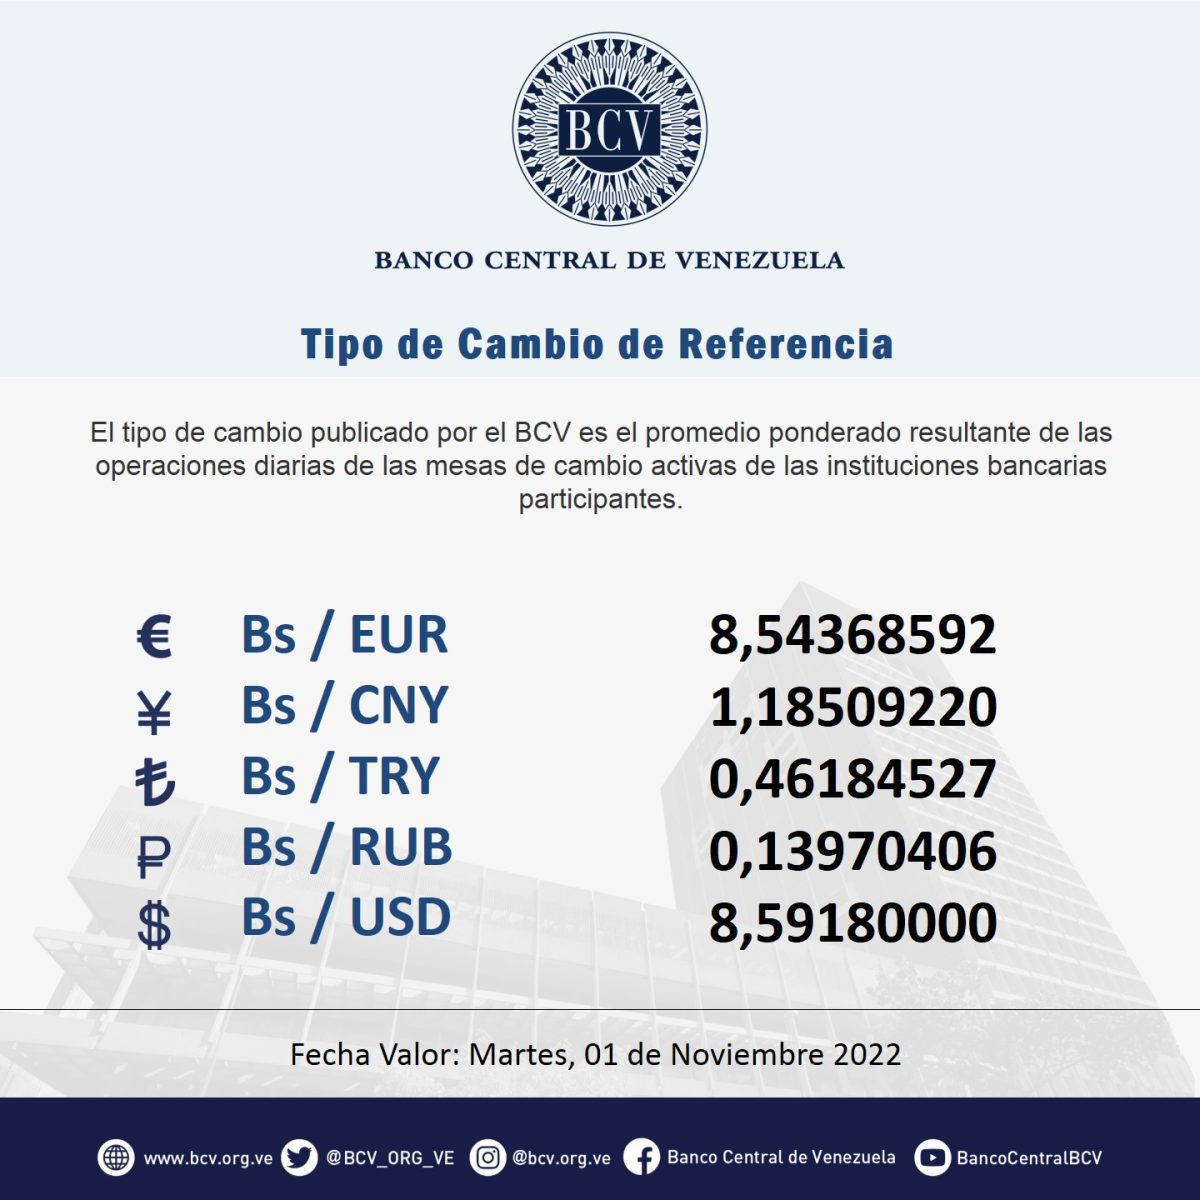 dolartoday en venezuela precio del dolar este lunes 31 de octubre de 2022 laverdaddemonagas.com bcv